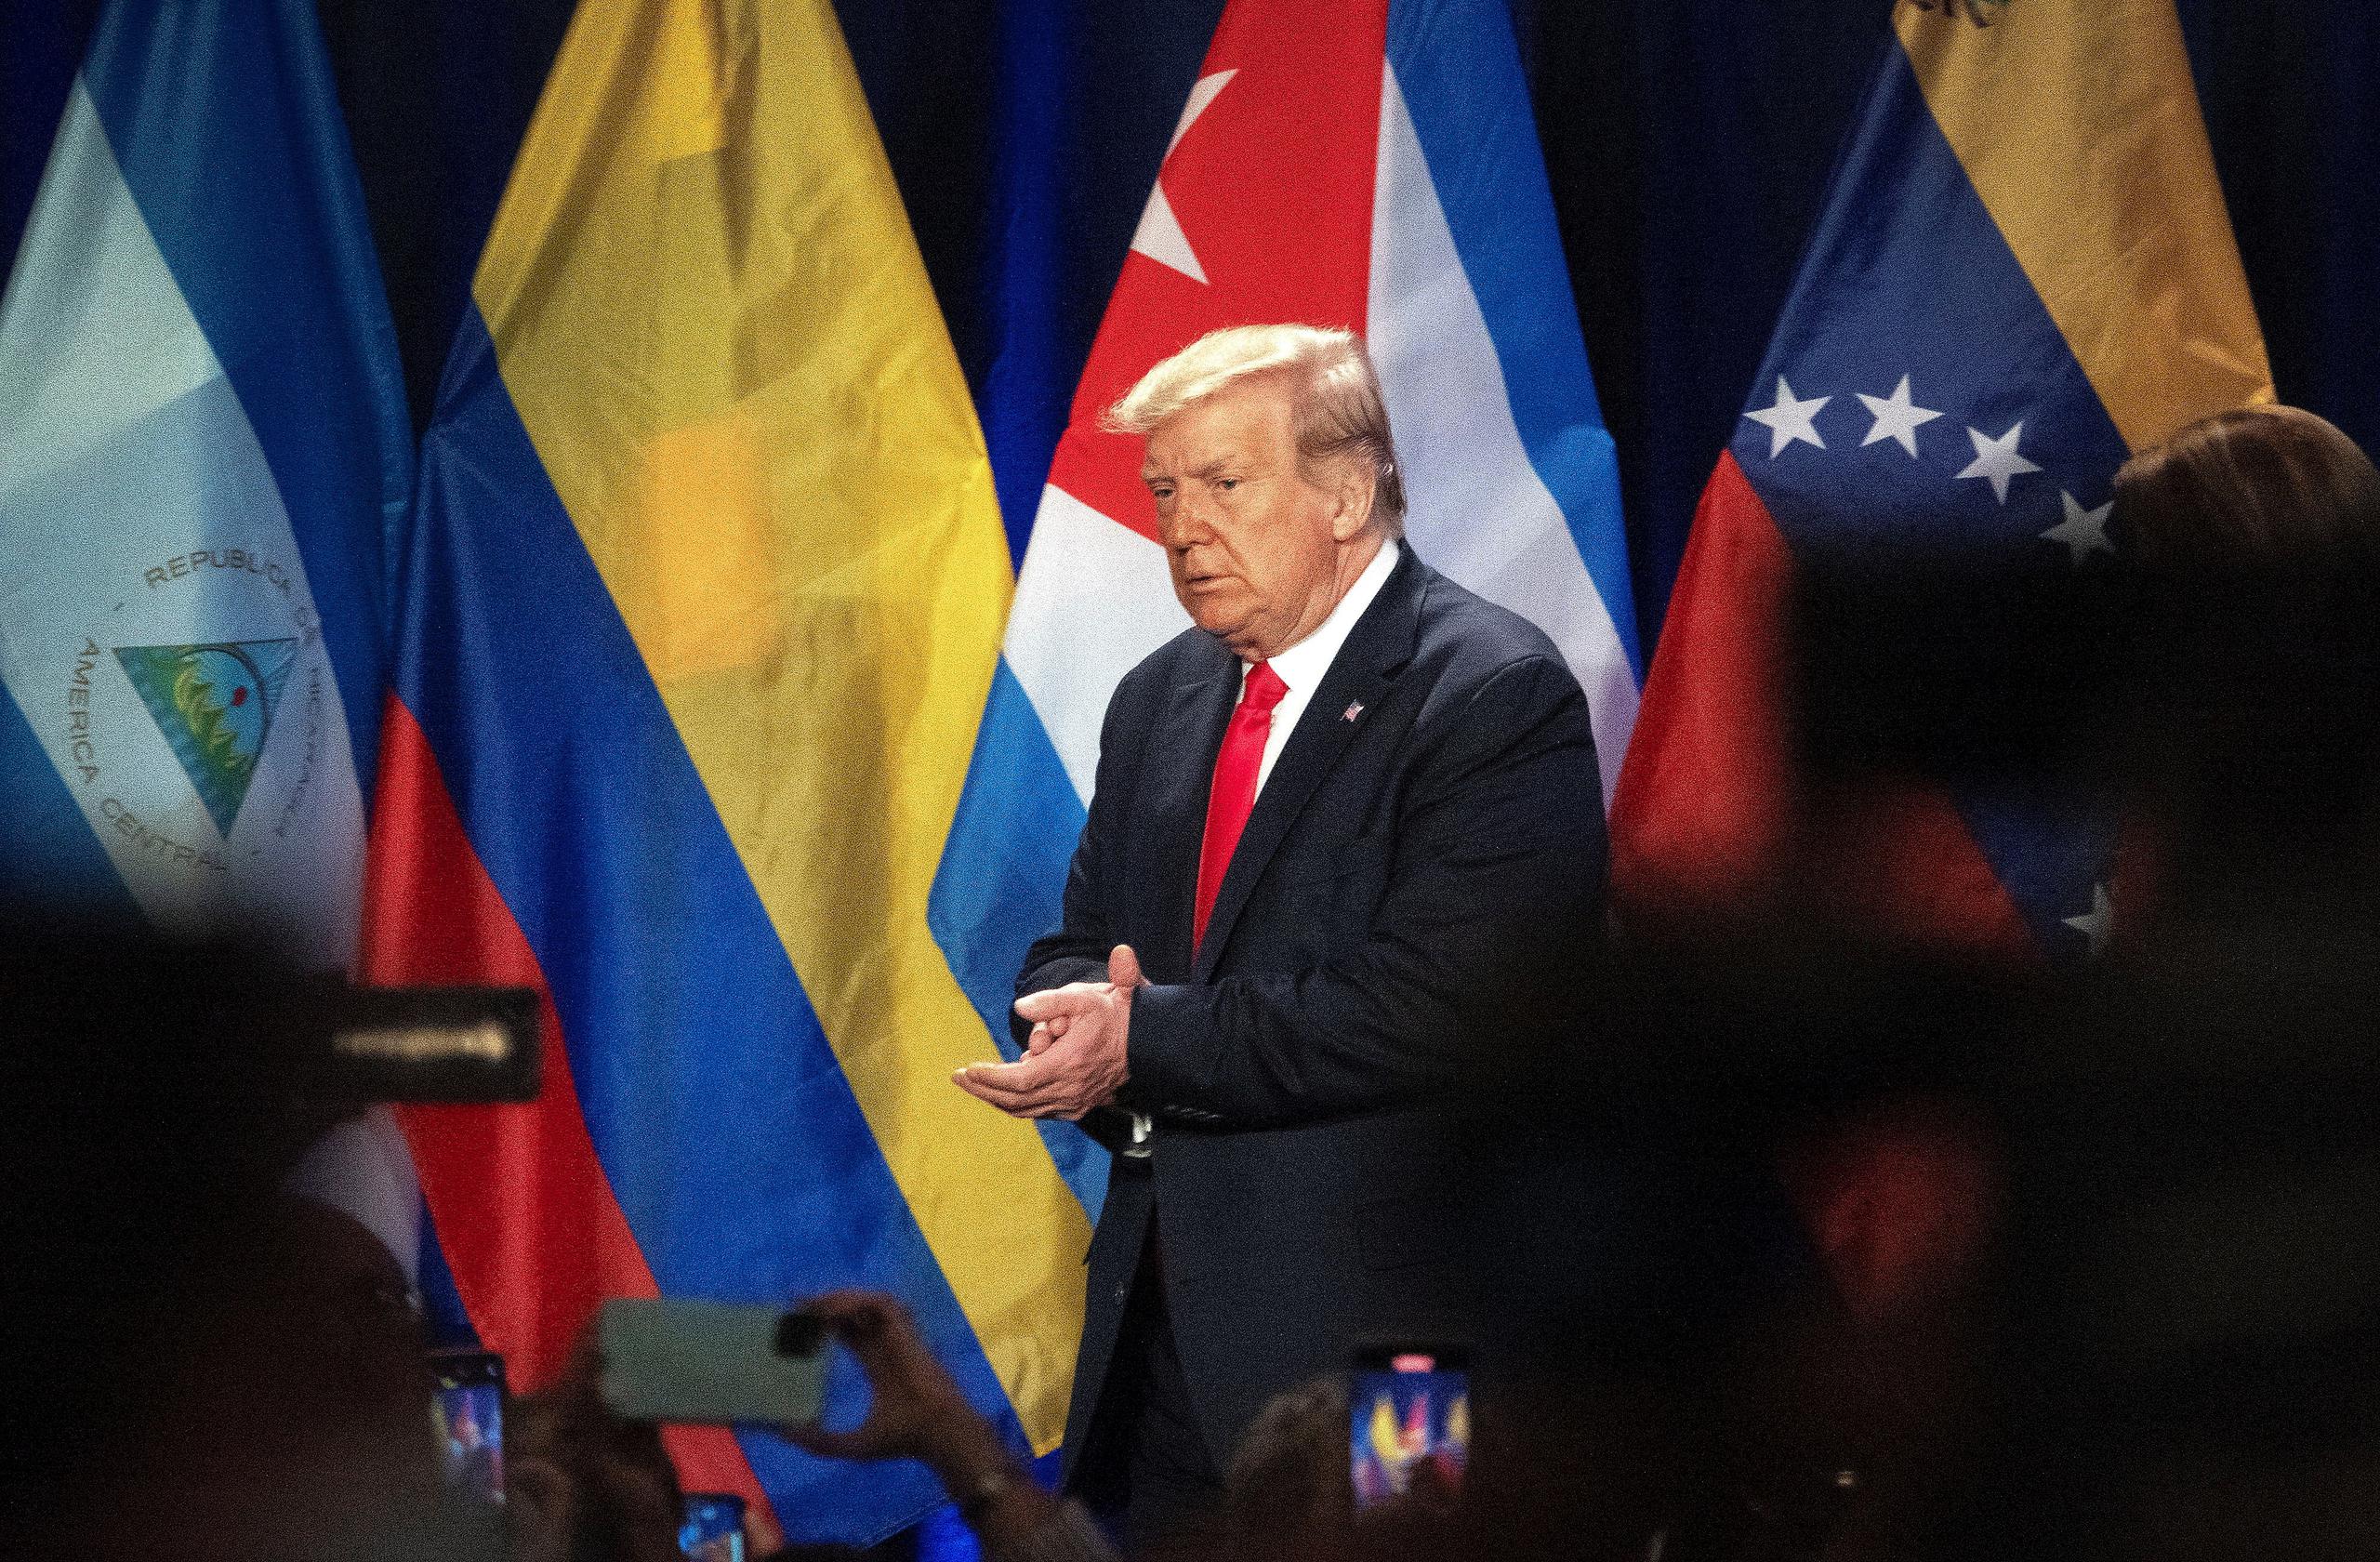 El presidente de Estados Unidos, Donald Trump, fue registrado este viernes, durante su intervención en el evento proselitista "Latinos por Trump", en Doral, Florida.